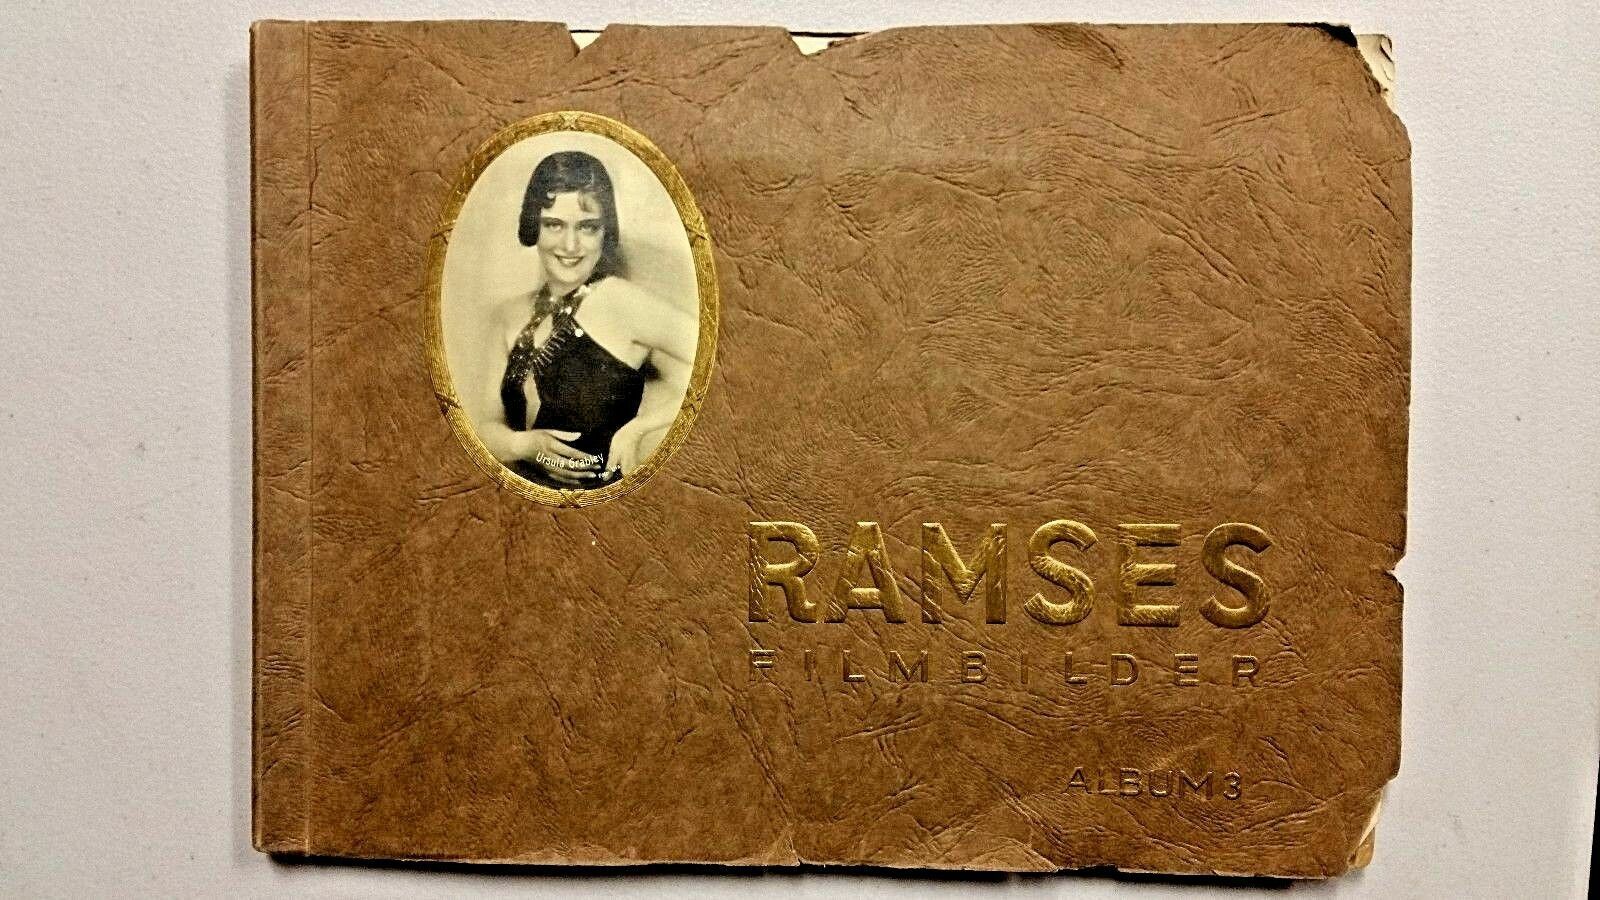 GERMAN 1930 RAMSES FILMBILDER ALBUM 3 - RARE 9 X 12 Cigarette Card Album